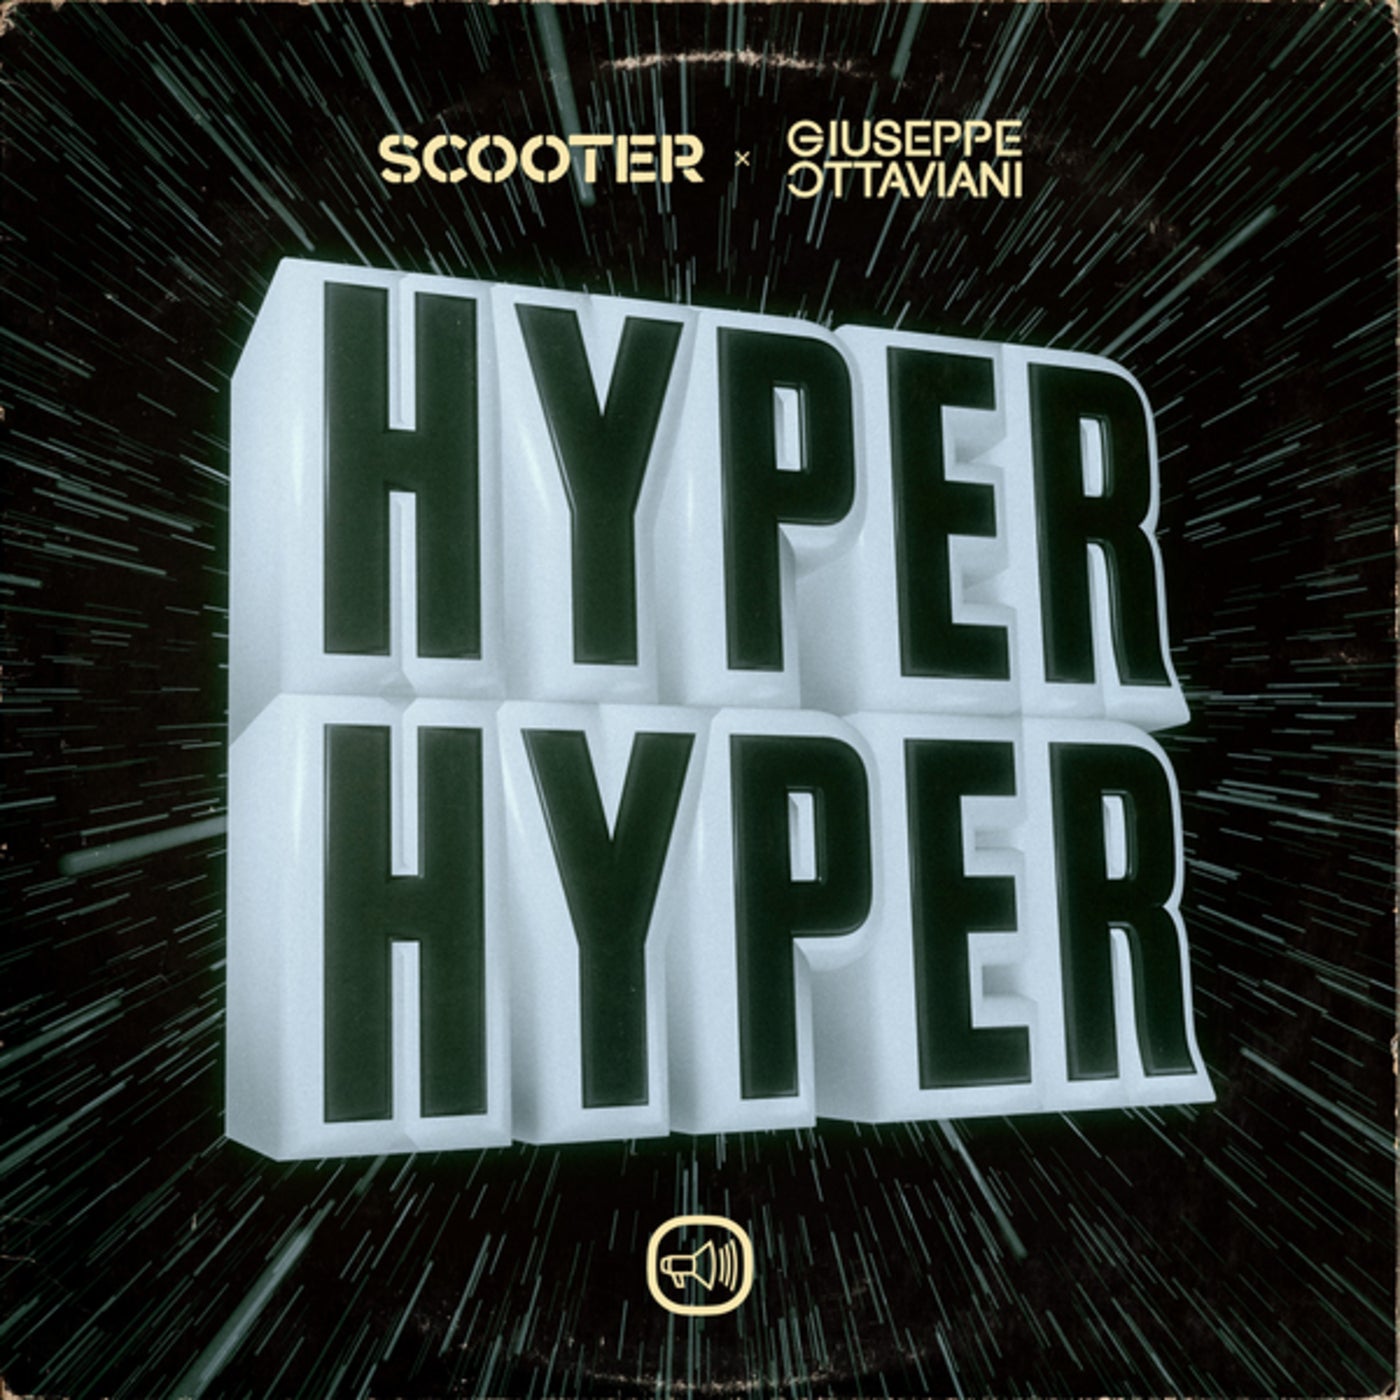 Scooter & Giuseppe Ottaviani Hyper Hyper cover artwork